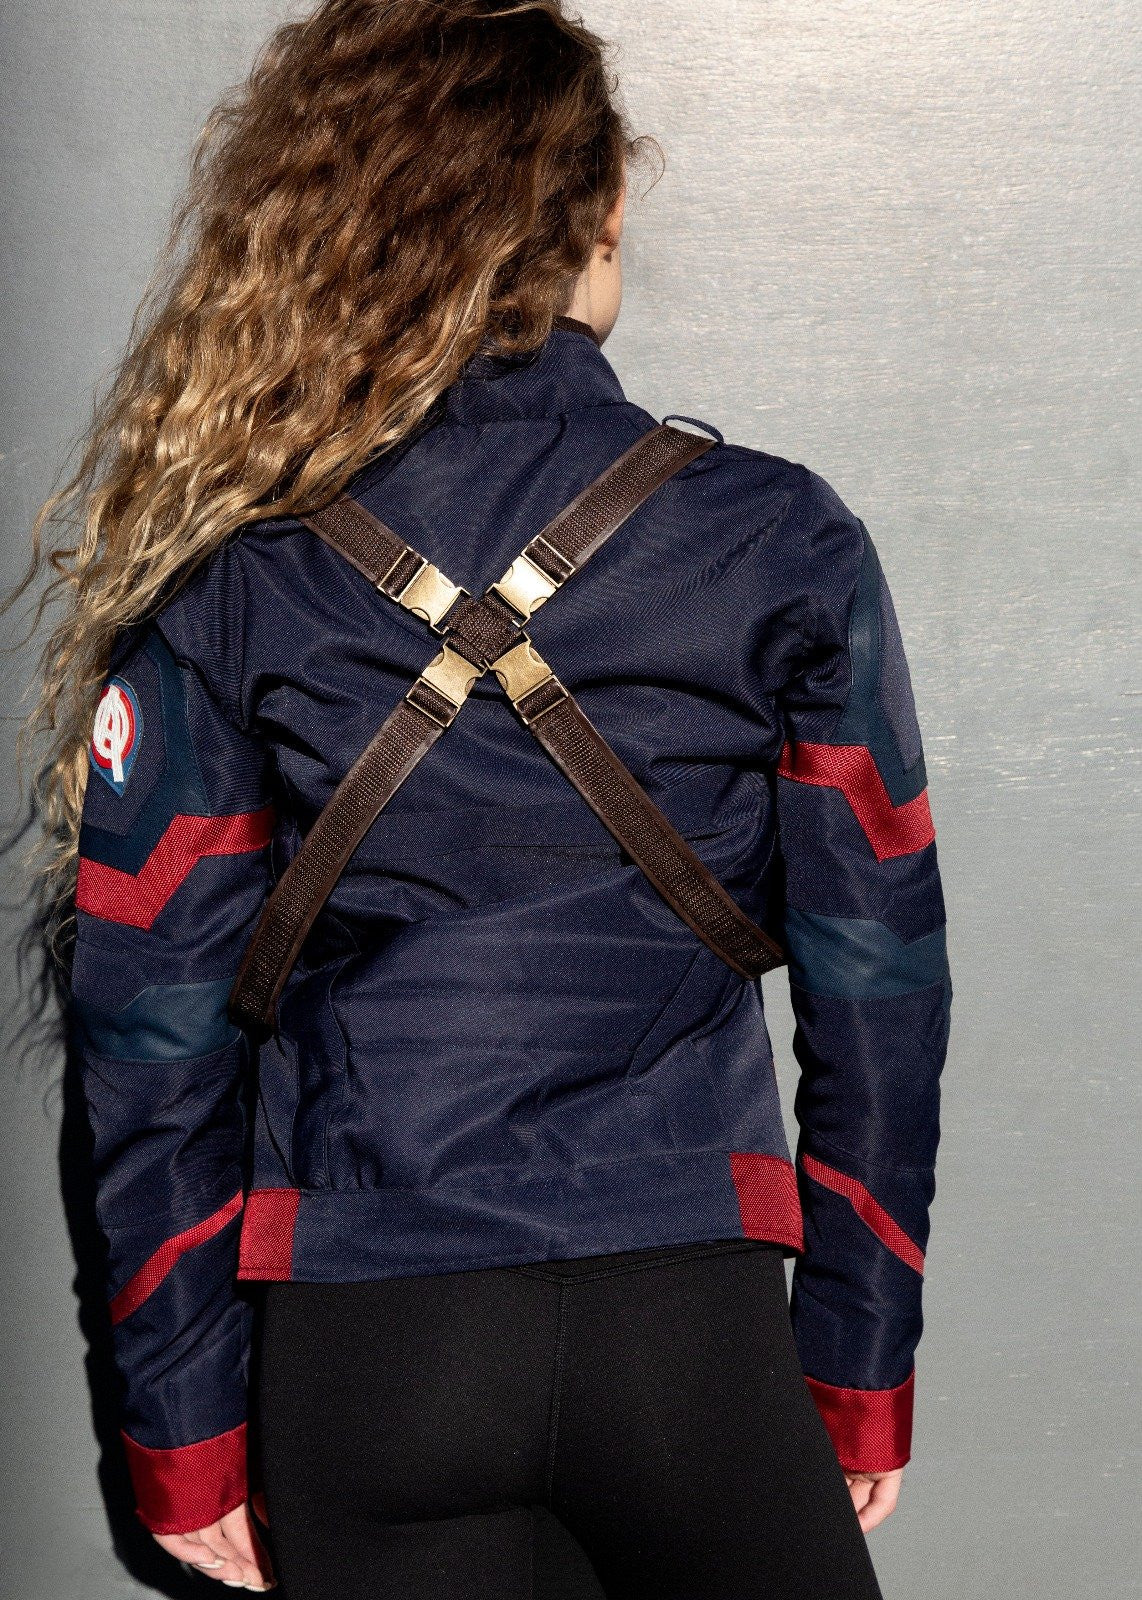 Womens Captain America Civil War Leather Textile Jacket